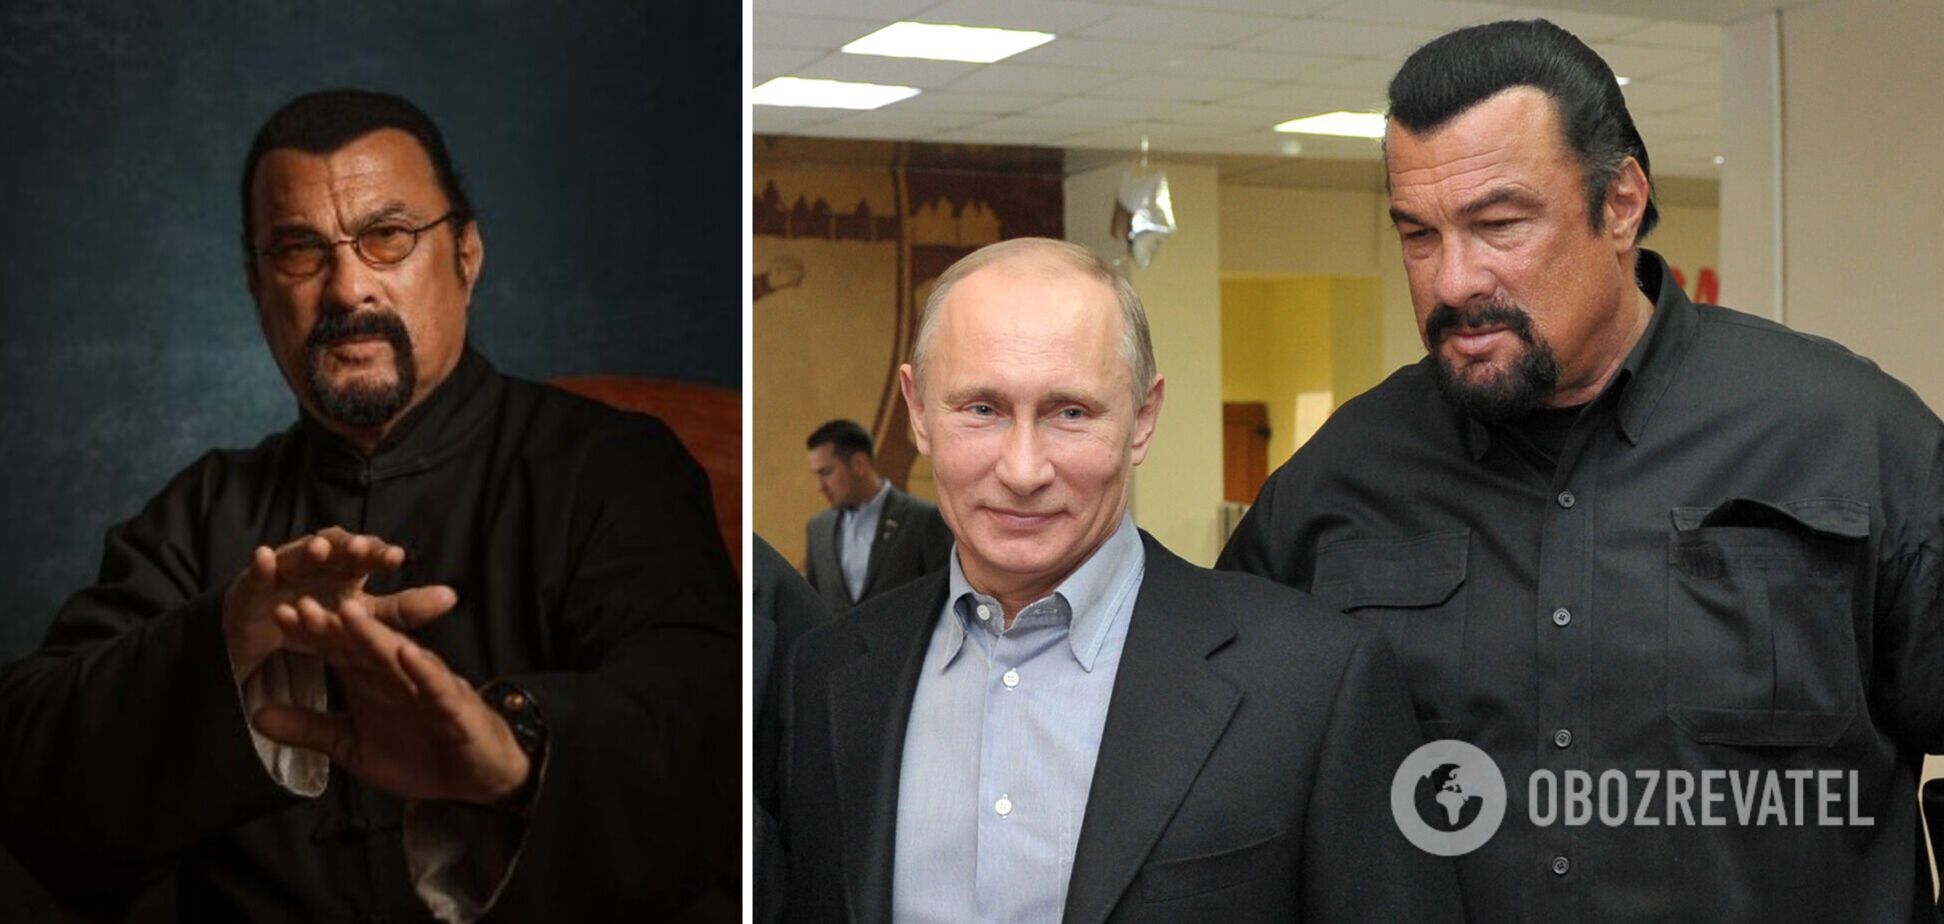 Зірка Голлівуду Стівен Сігал виступив на з'їзді русофілів у Москві, де заявив, що він на 'мільйон відсотків росіянин'